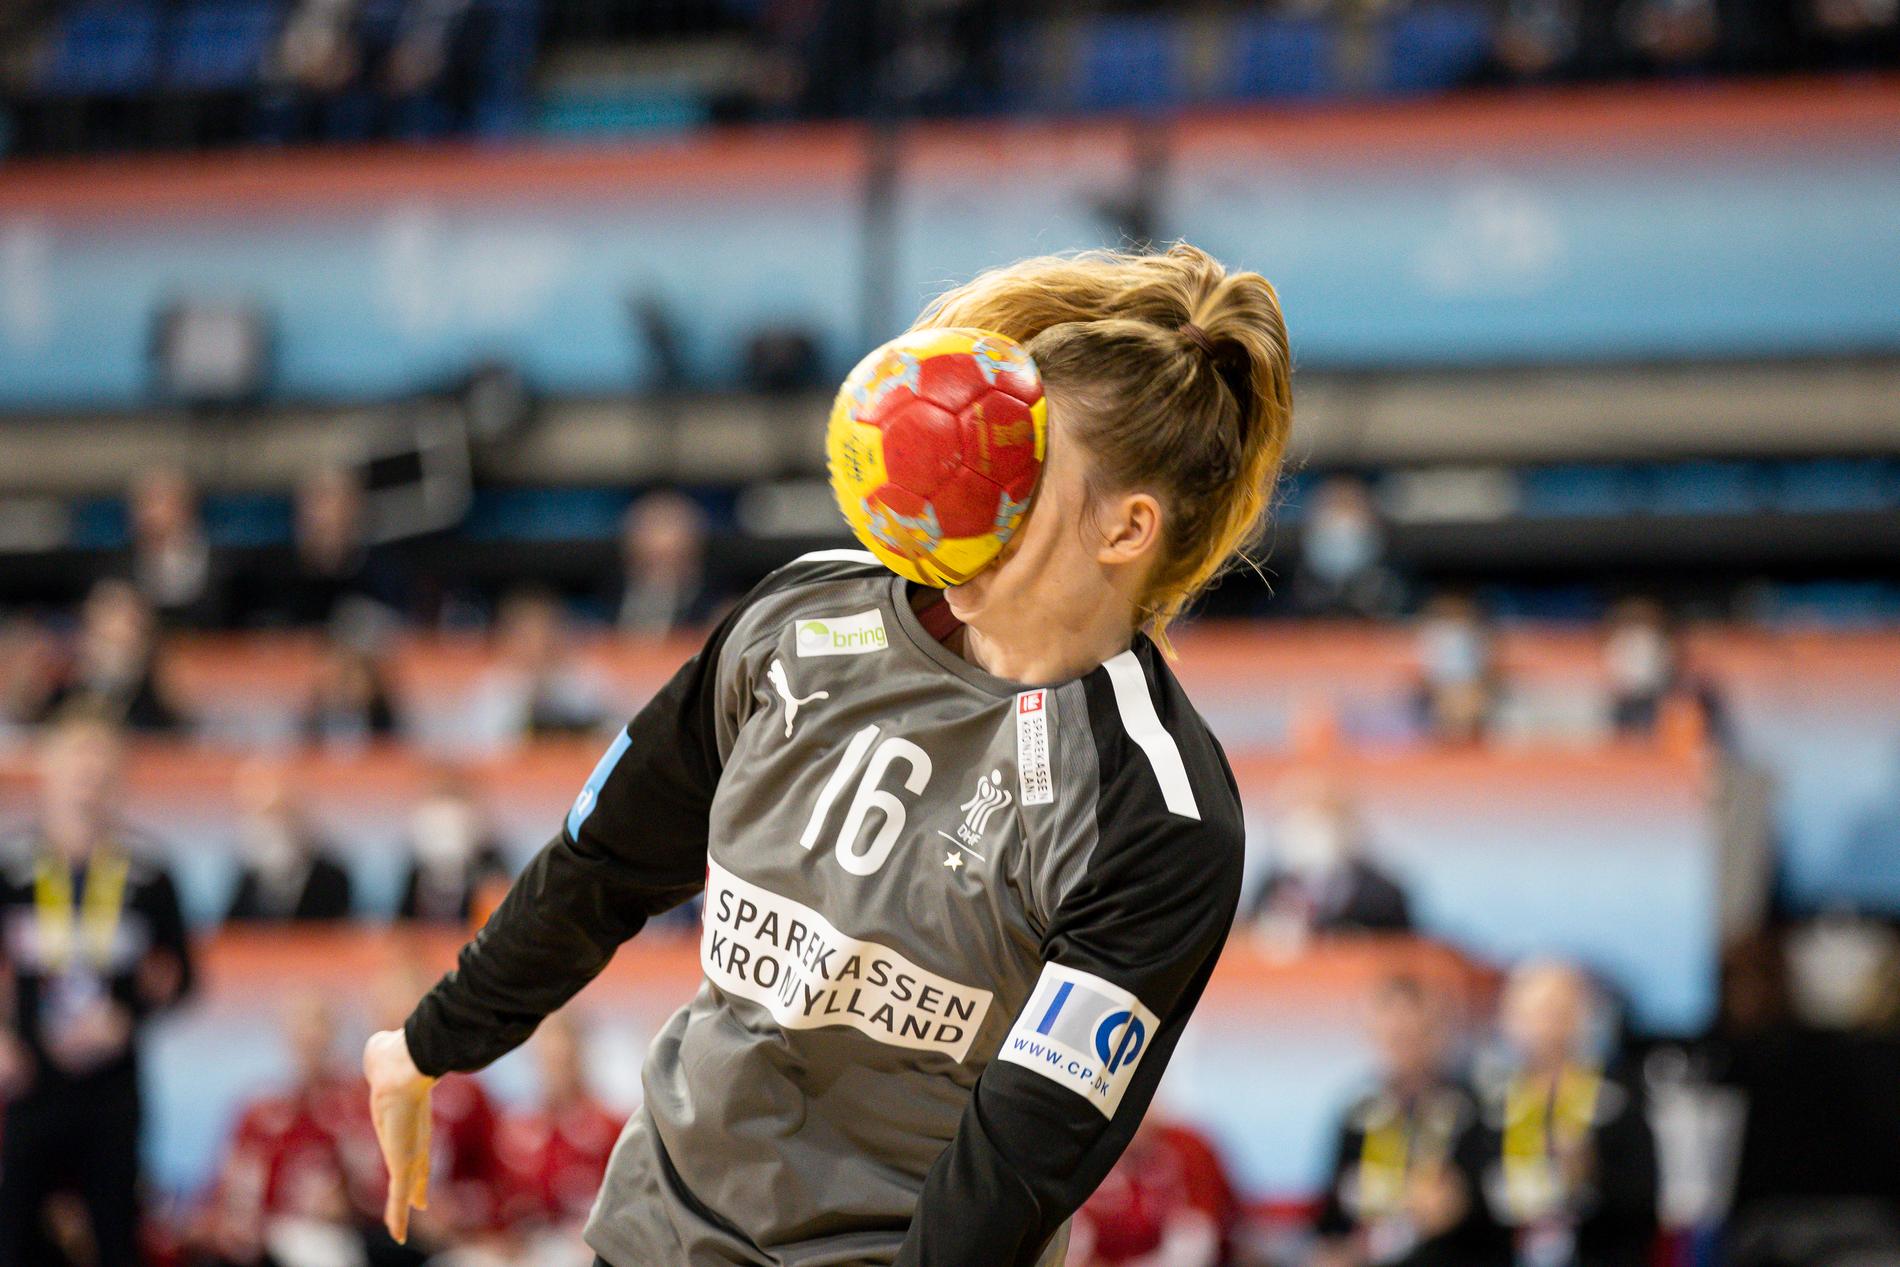 Danmarks Althea Reinhardt fick ett stenhårt skott i ansiktet i semifinalen mot Frankrike.